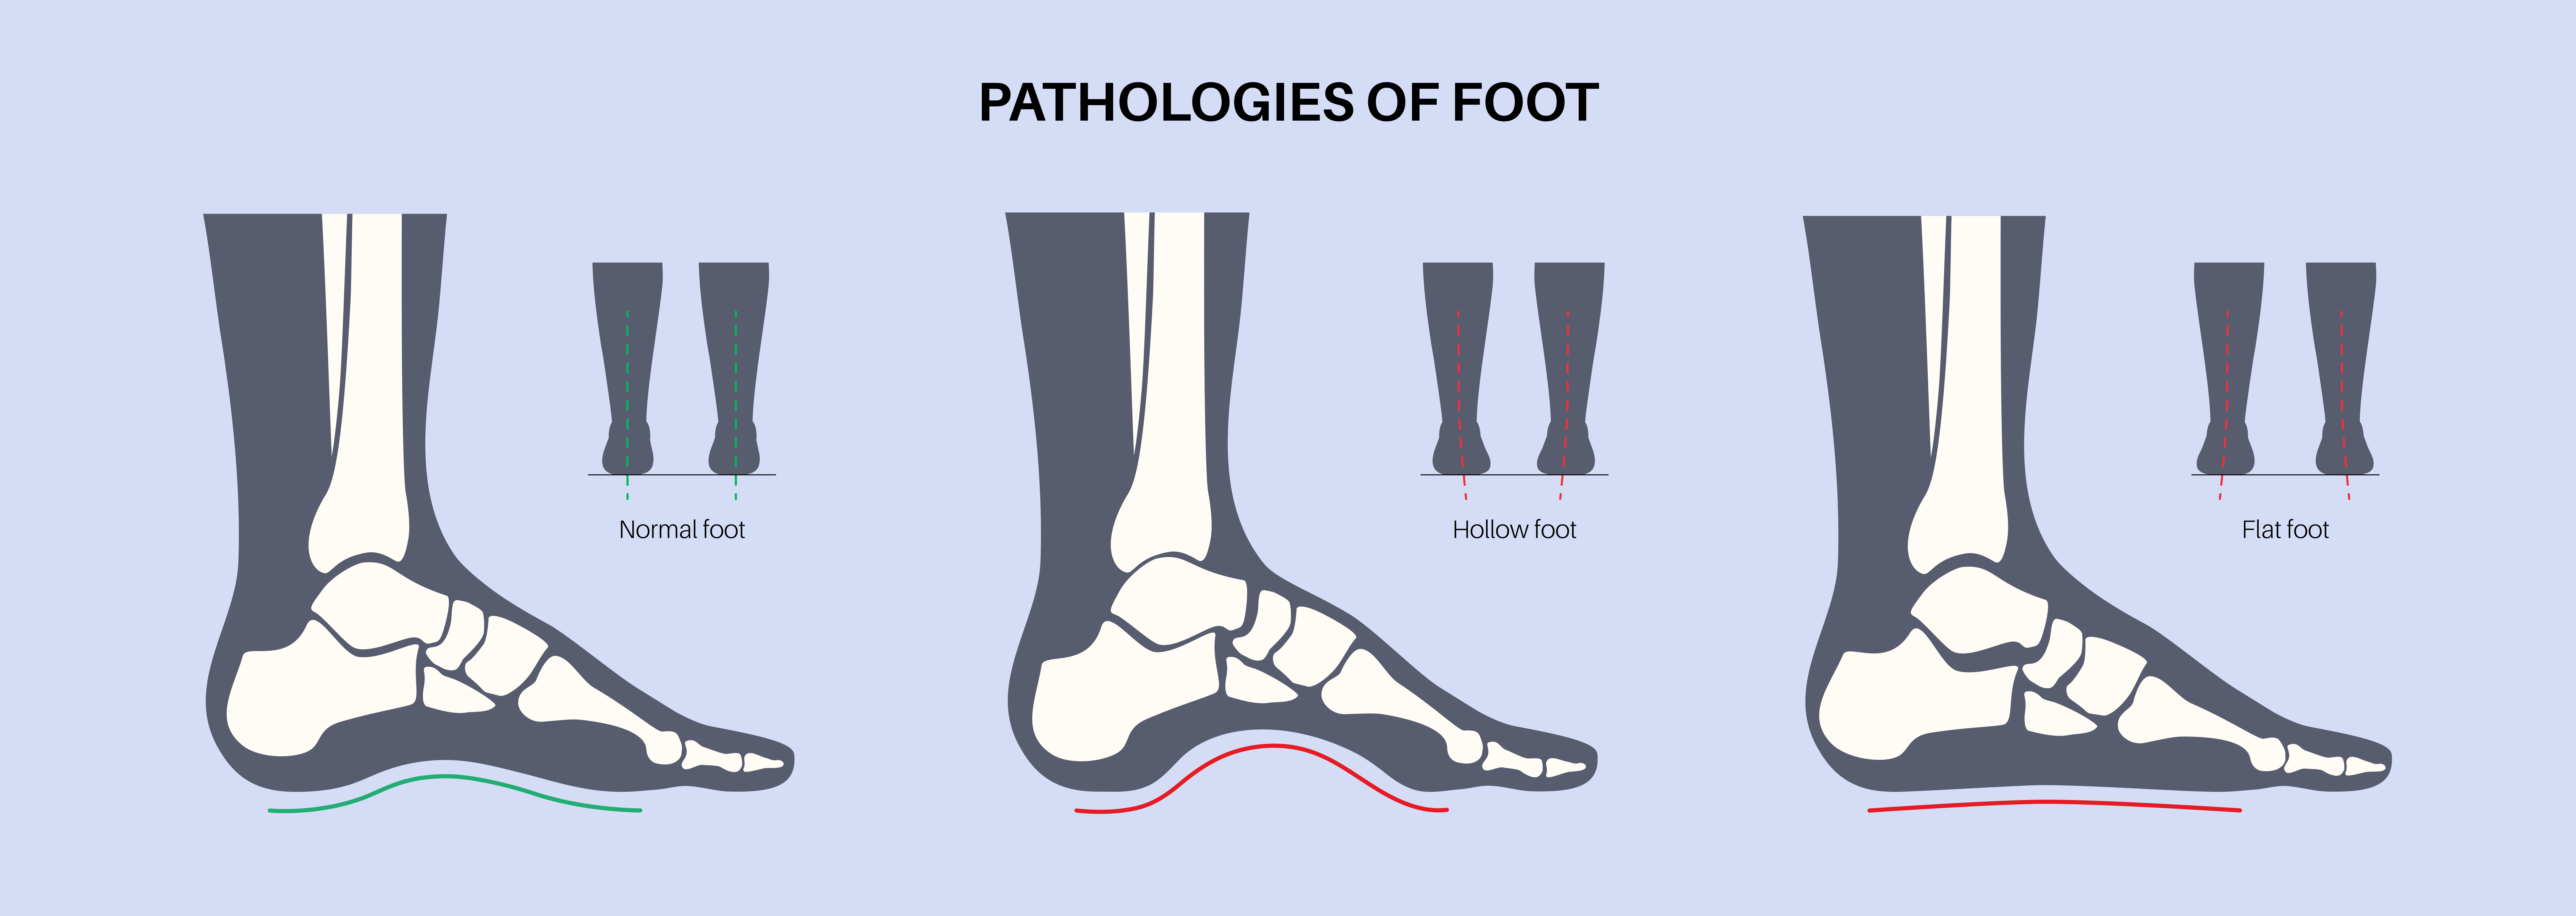 problemi posturali del piede